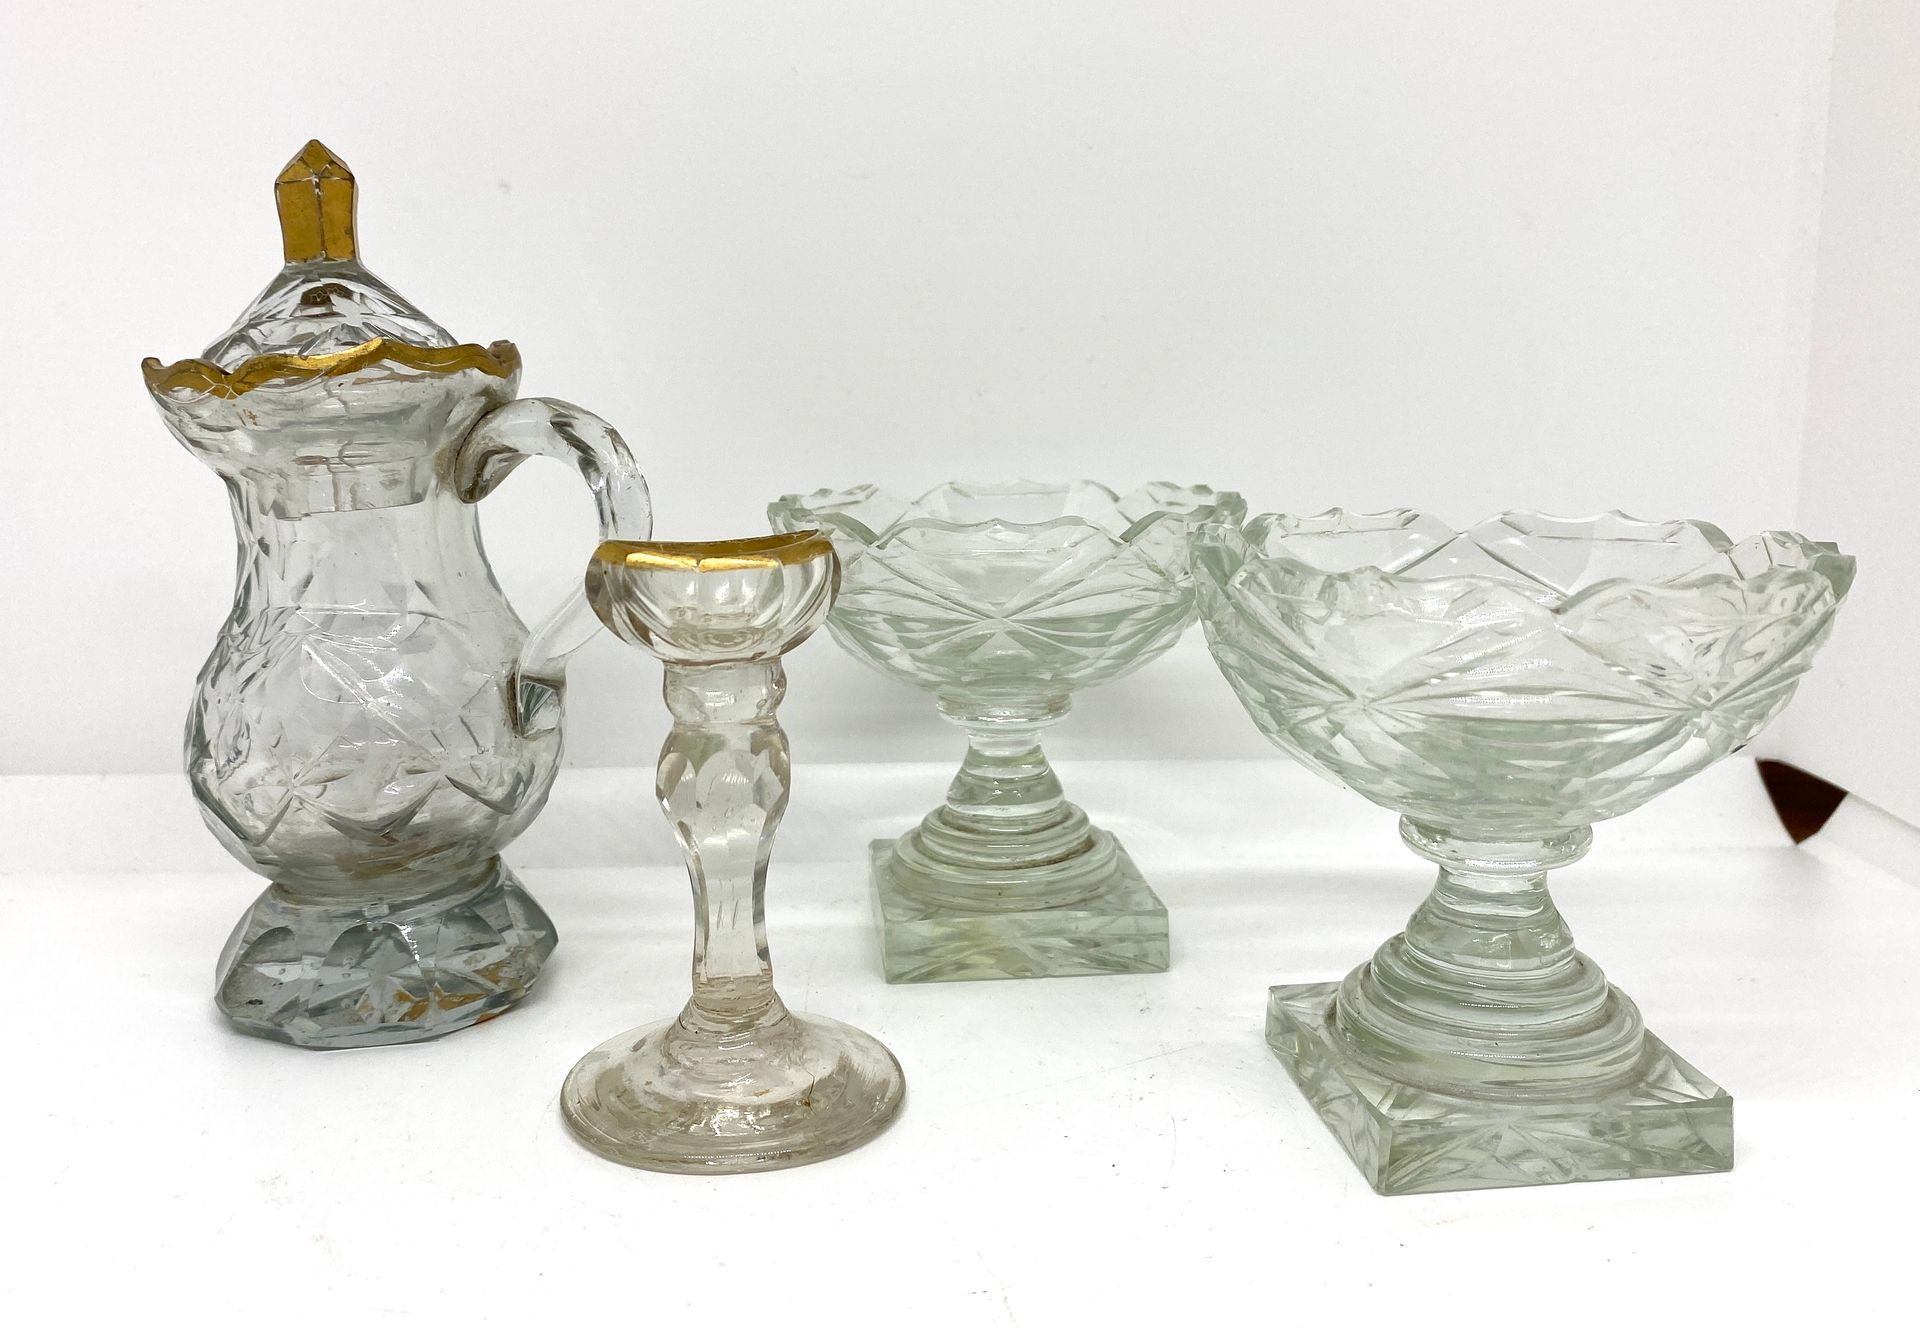 Null 套装包括：一个切割玻璃芥末罐和洗眼器

18世纪晚期

附有两个小的切割玻璃碗。